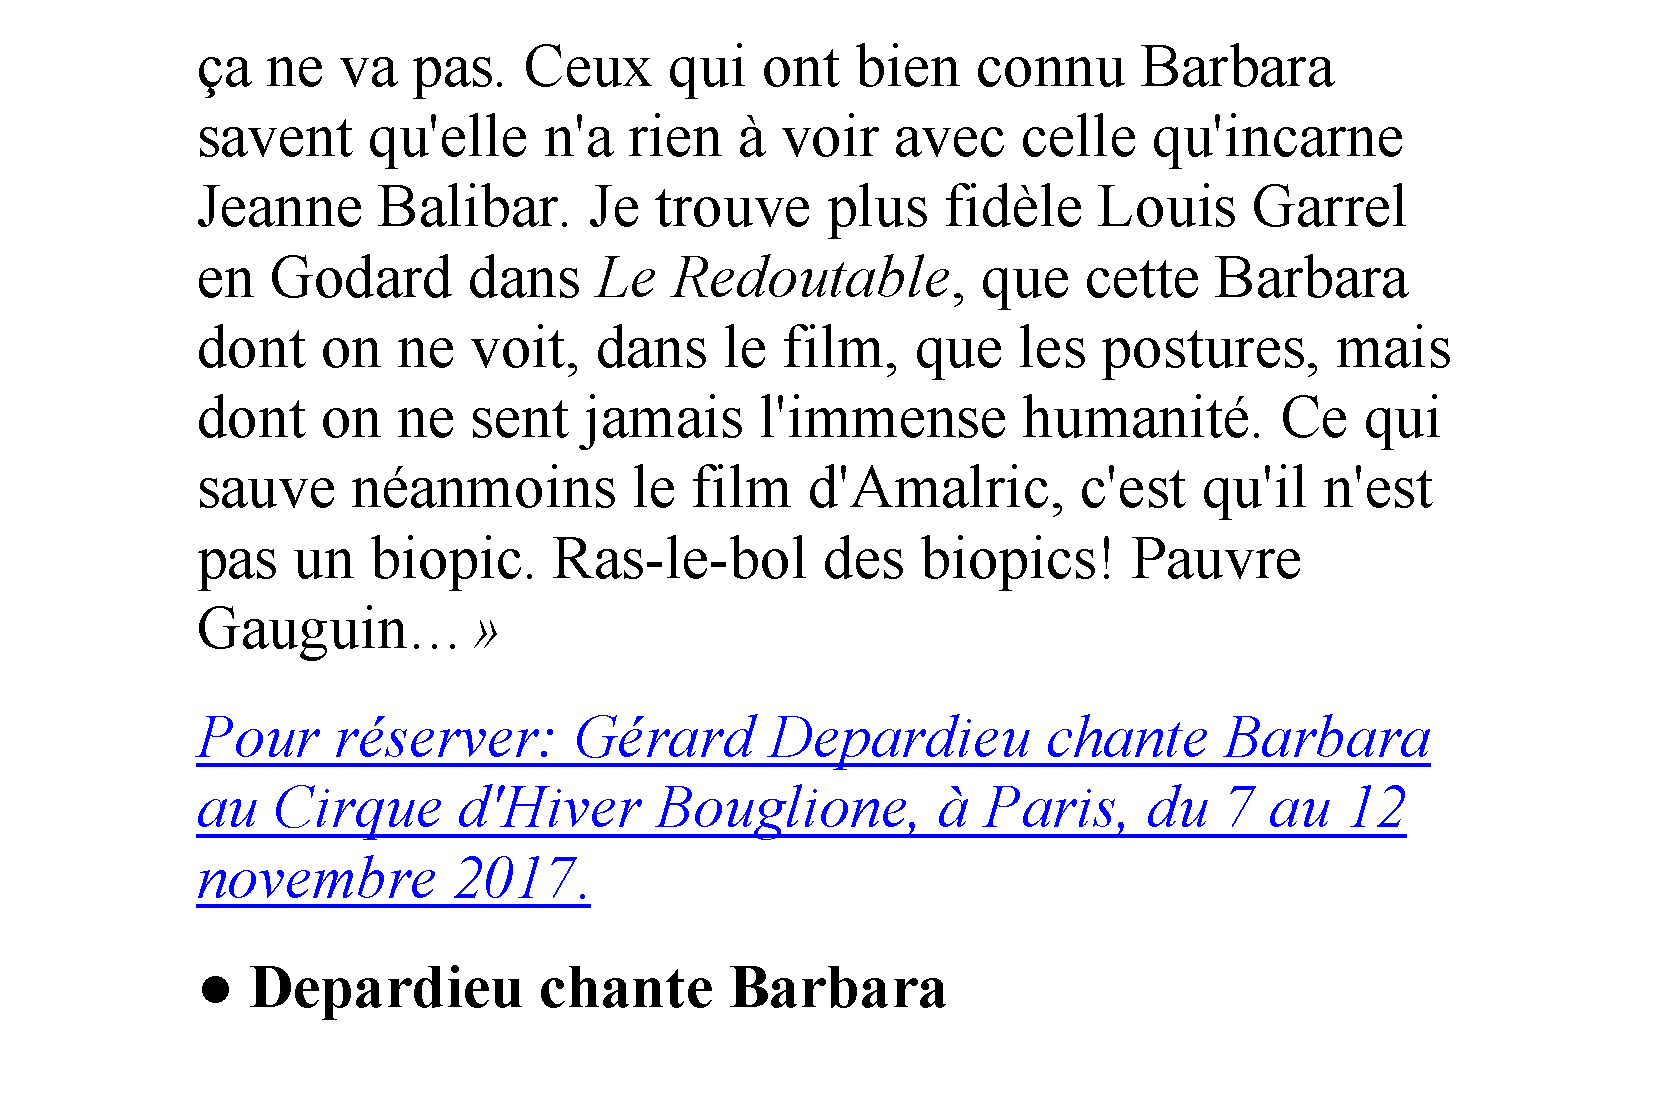 06/10/2017 Le Figaro Gérard Depardieu parle de Léo Ferré